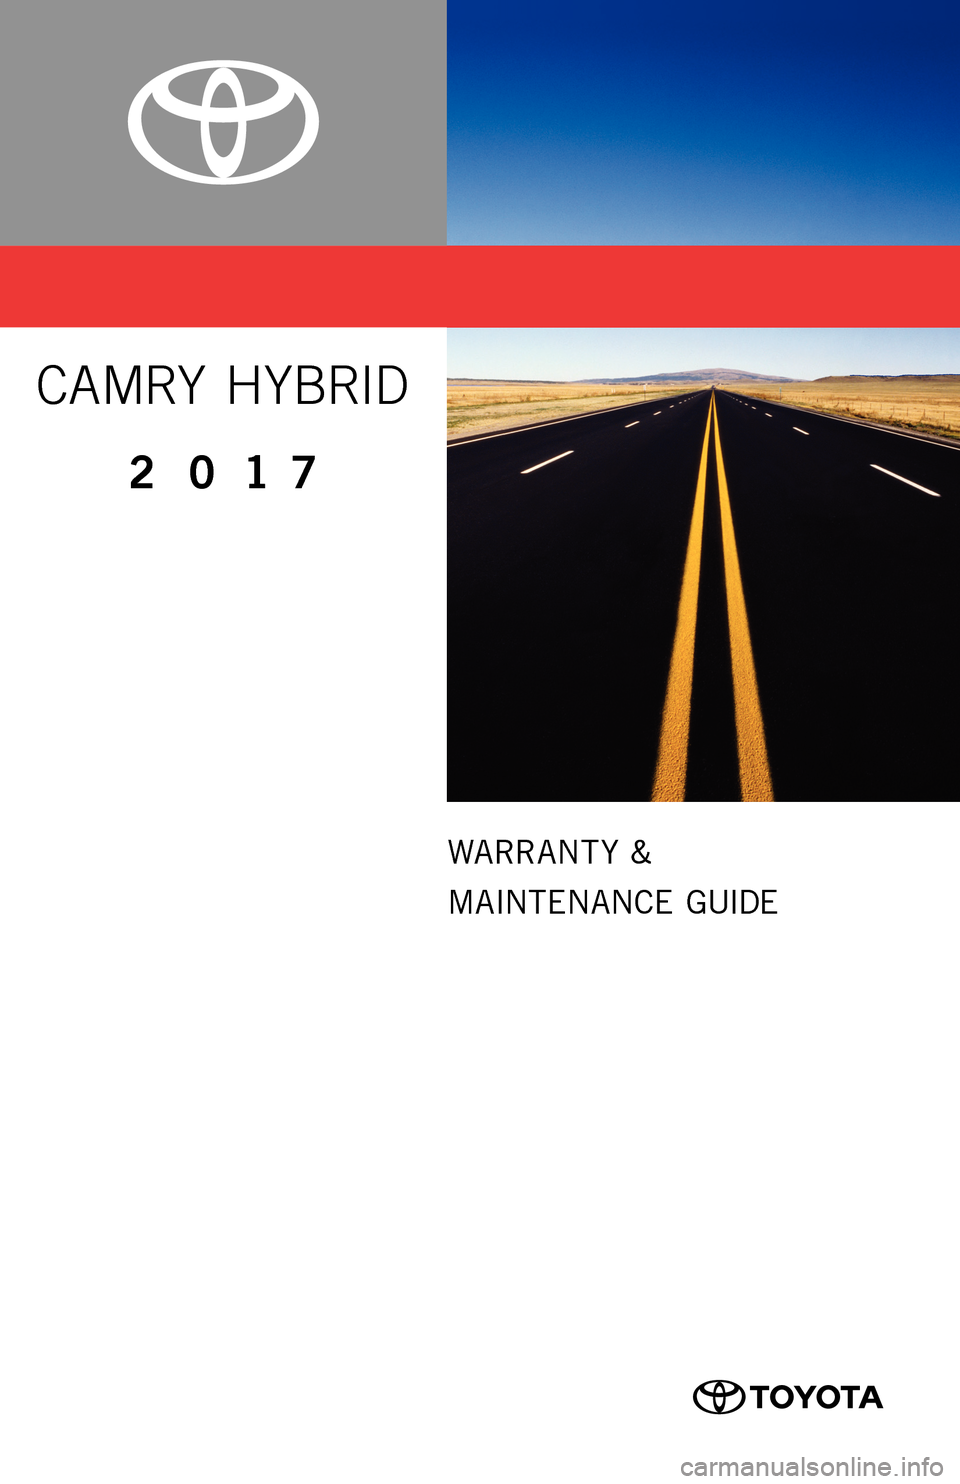 TOYOTA CAMRY HYBRID 2017 XV50 / 9.G Warranty And Maintenance Guide WARRANT Y  &
MAINTENANCE GUIDE
CAMRY HYBRID
2017 